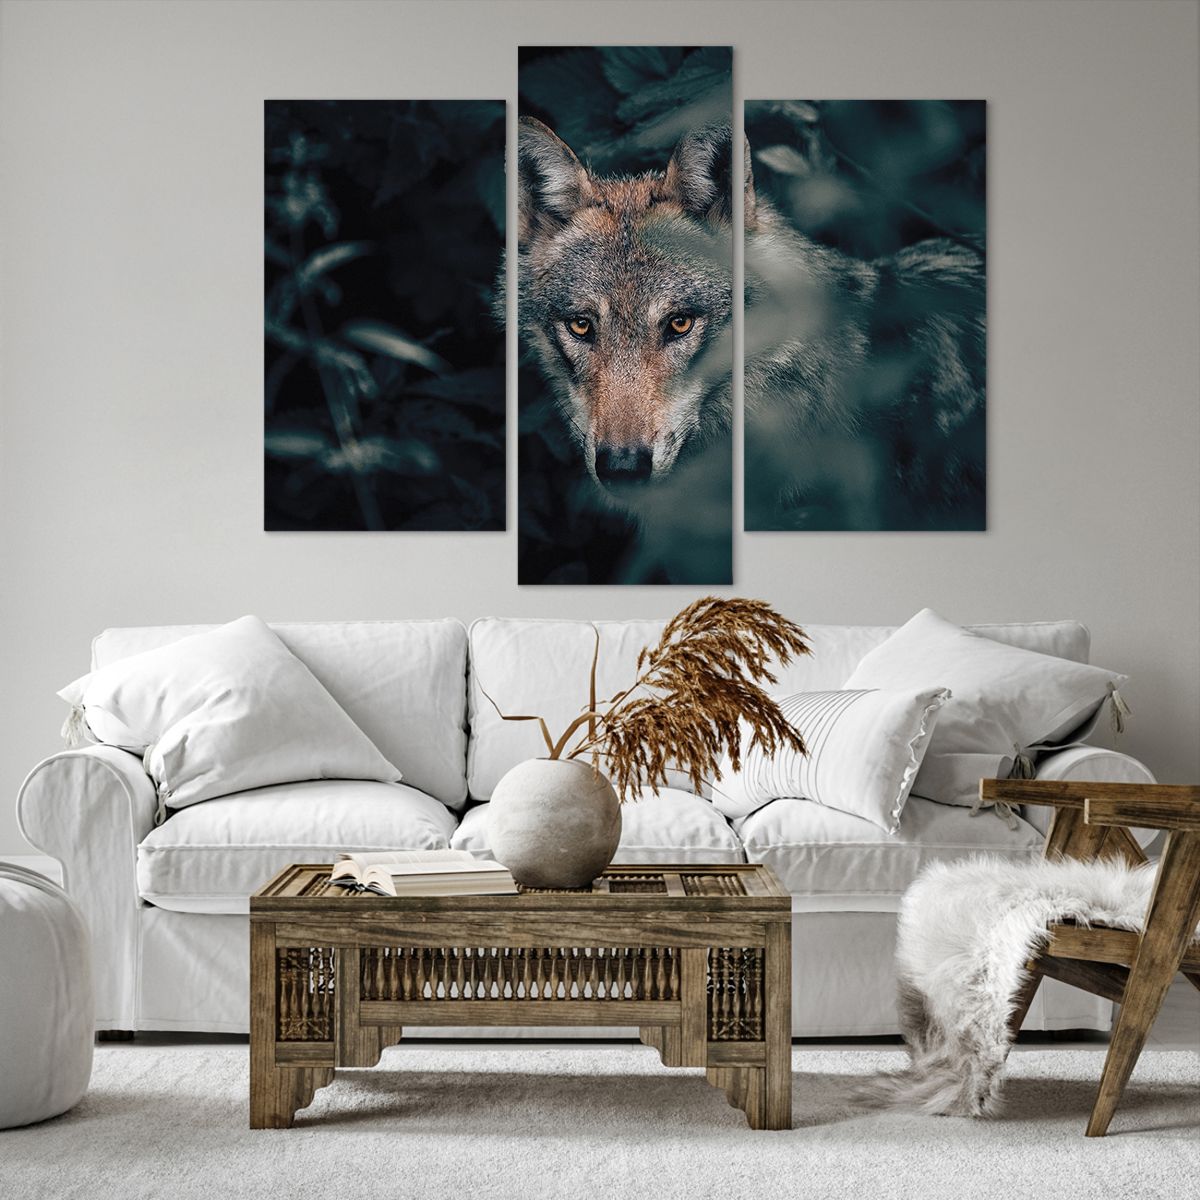 Bild auf Leinwand Wolf, Bild auf Leinwand Wald, Bild auf Leinwand Tiere, Bild auf Leinwand Raubtier, Bild auf Leinwand Natur